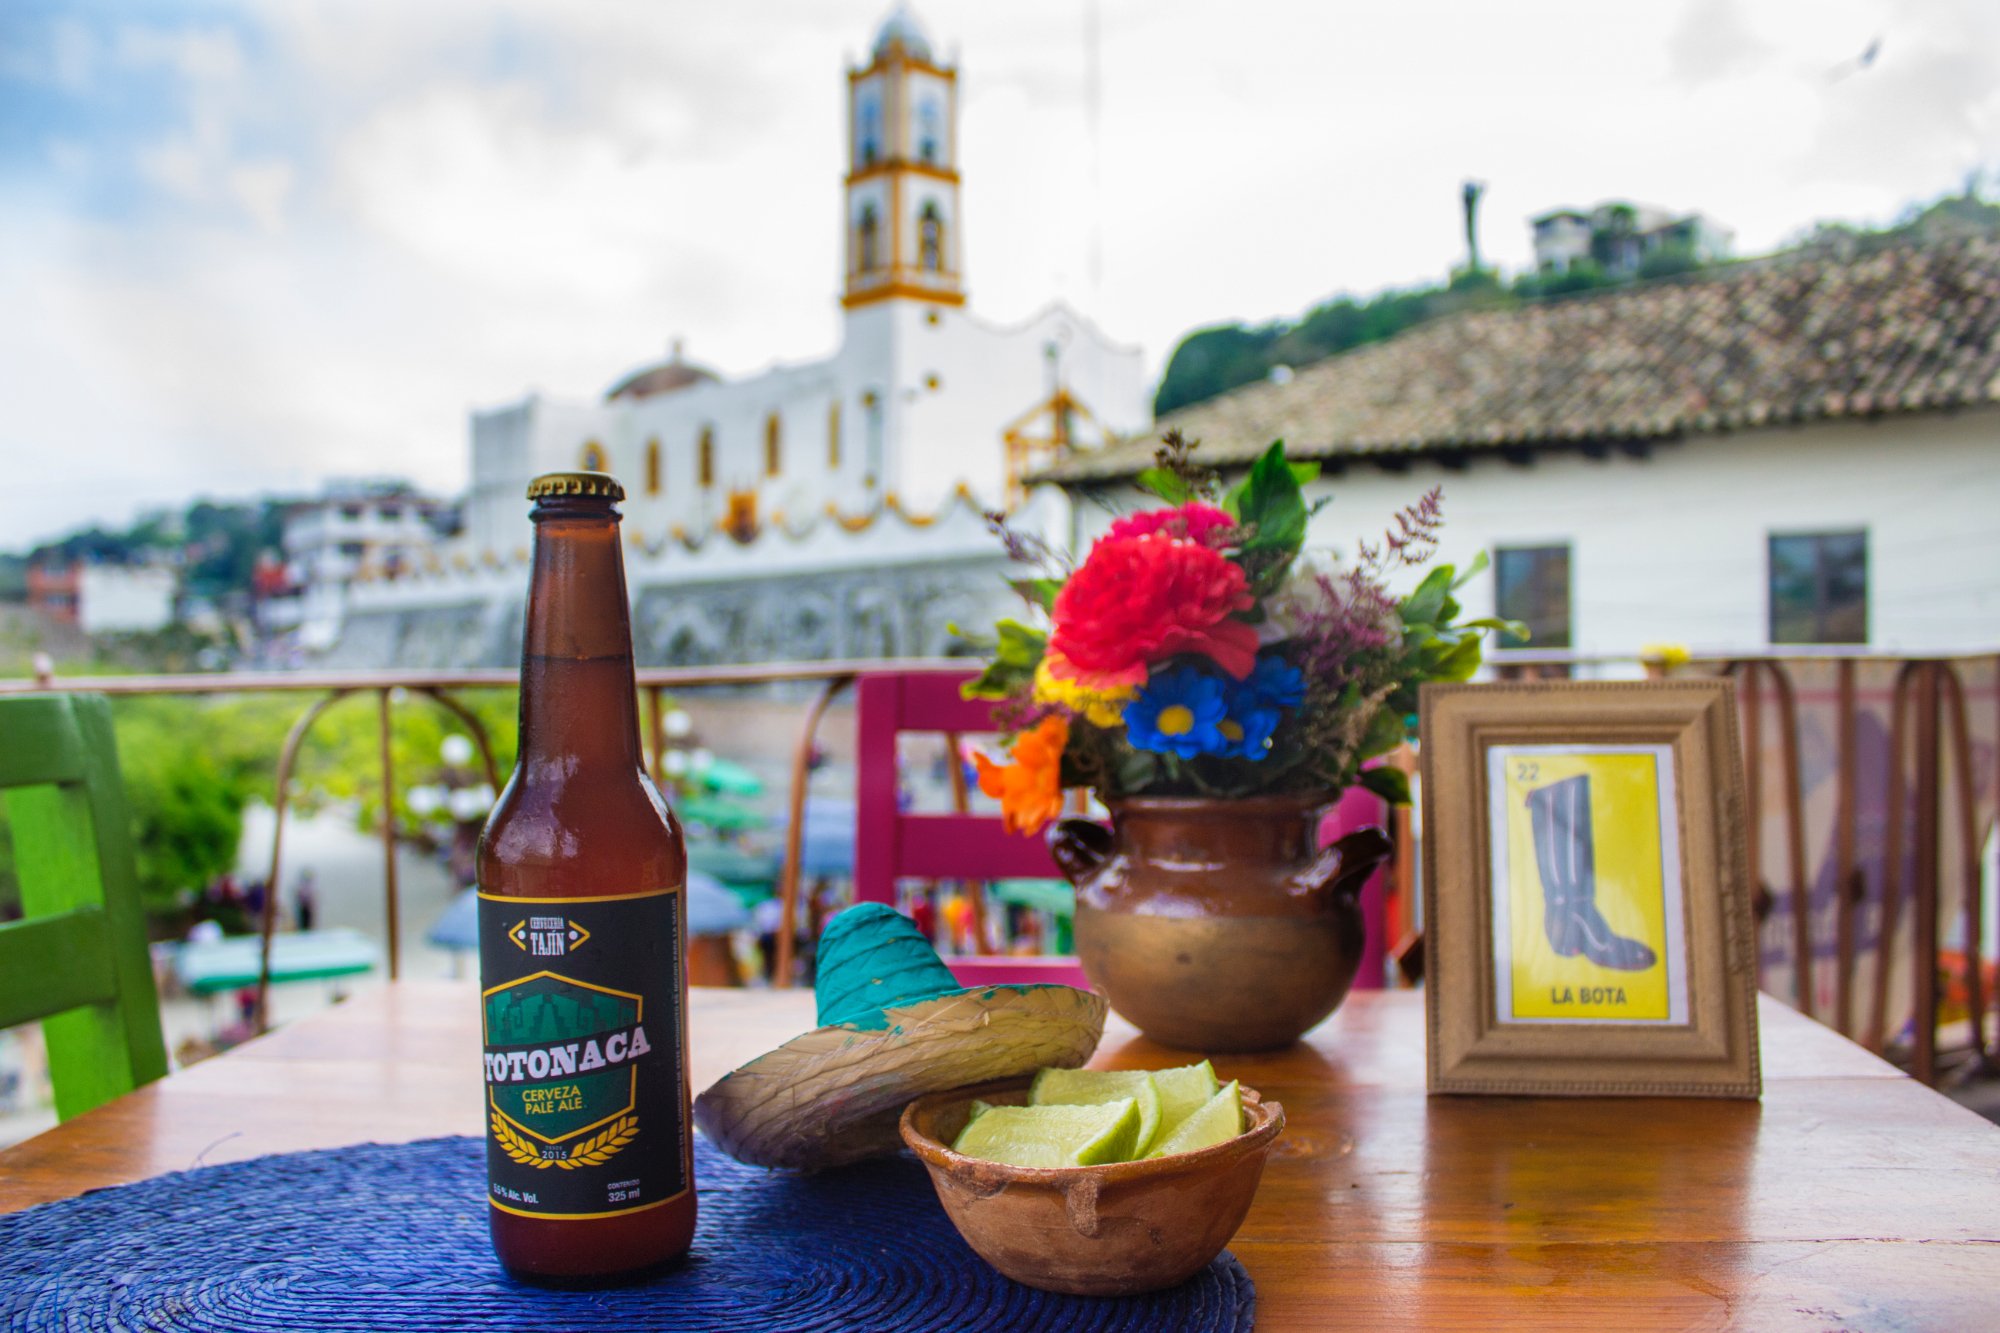 Cervezas artesanales mexicanas